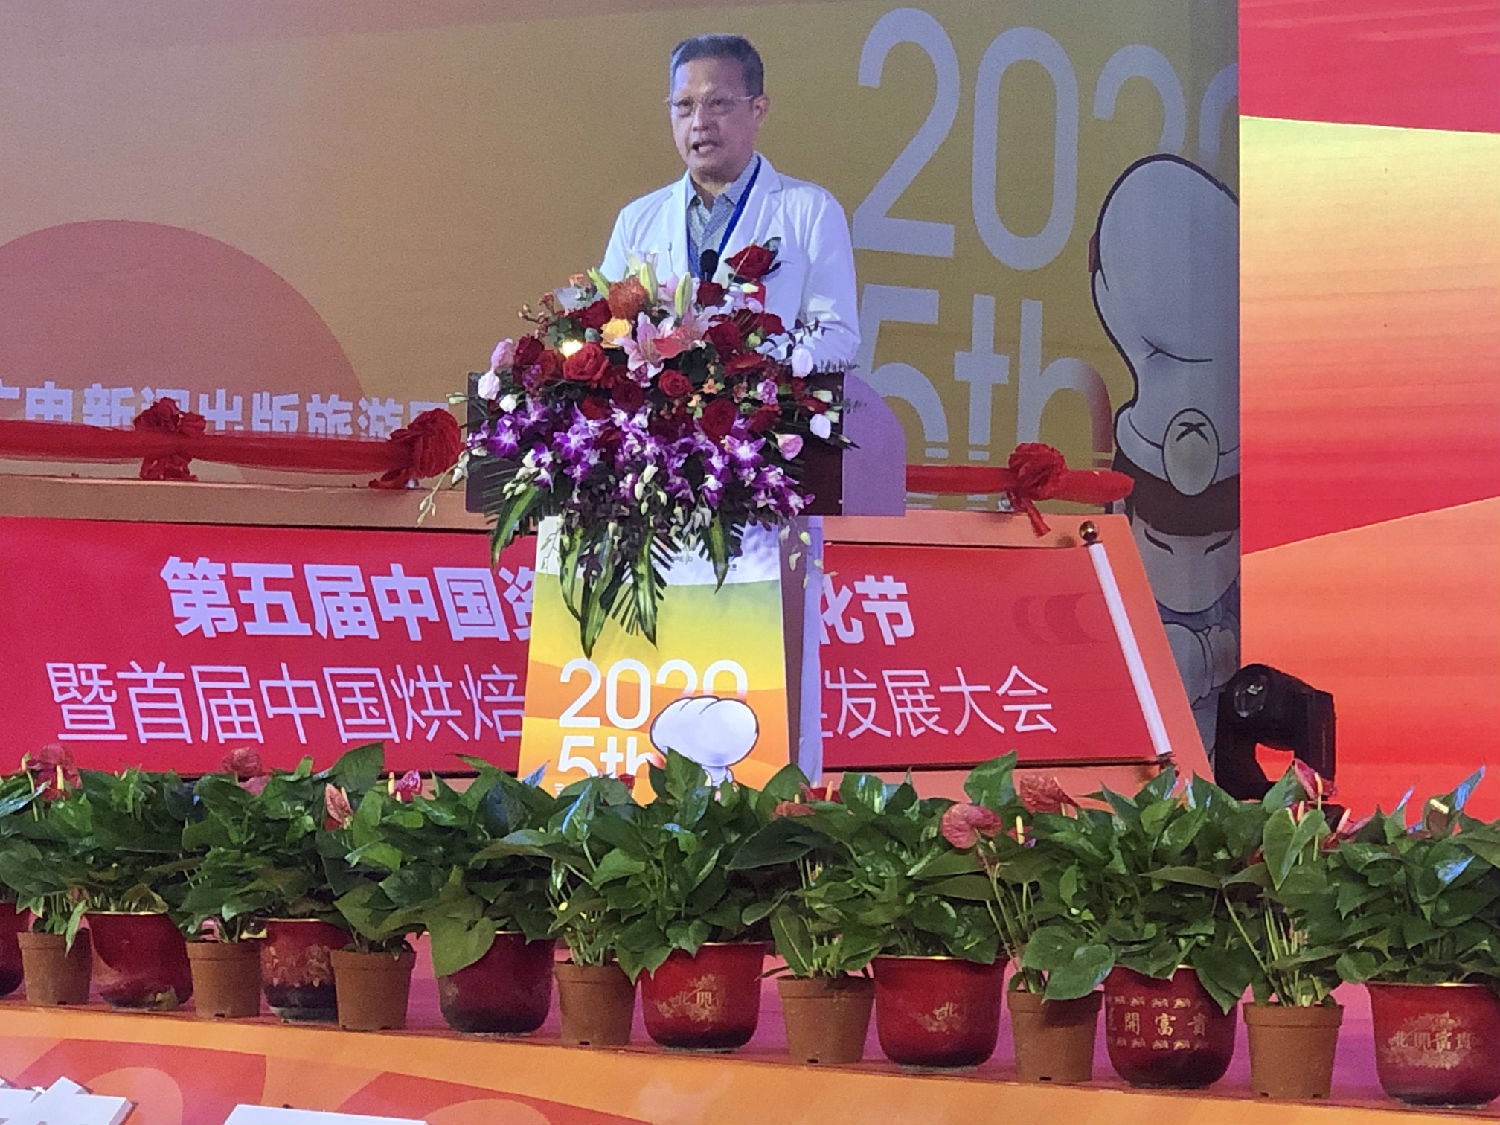 凯时k8受邀参展2020第五届中国资溪面包文化节